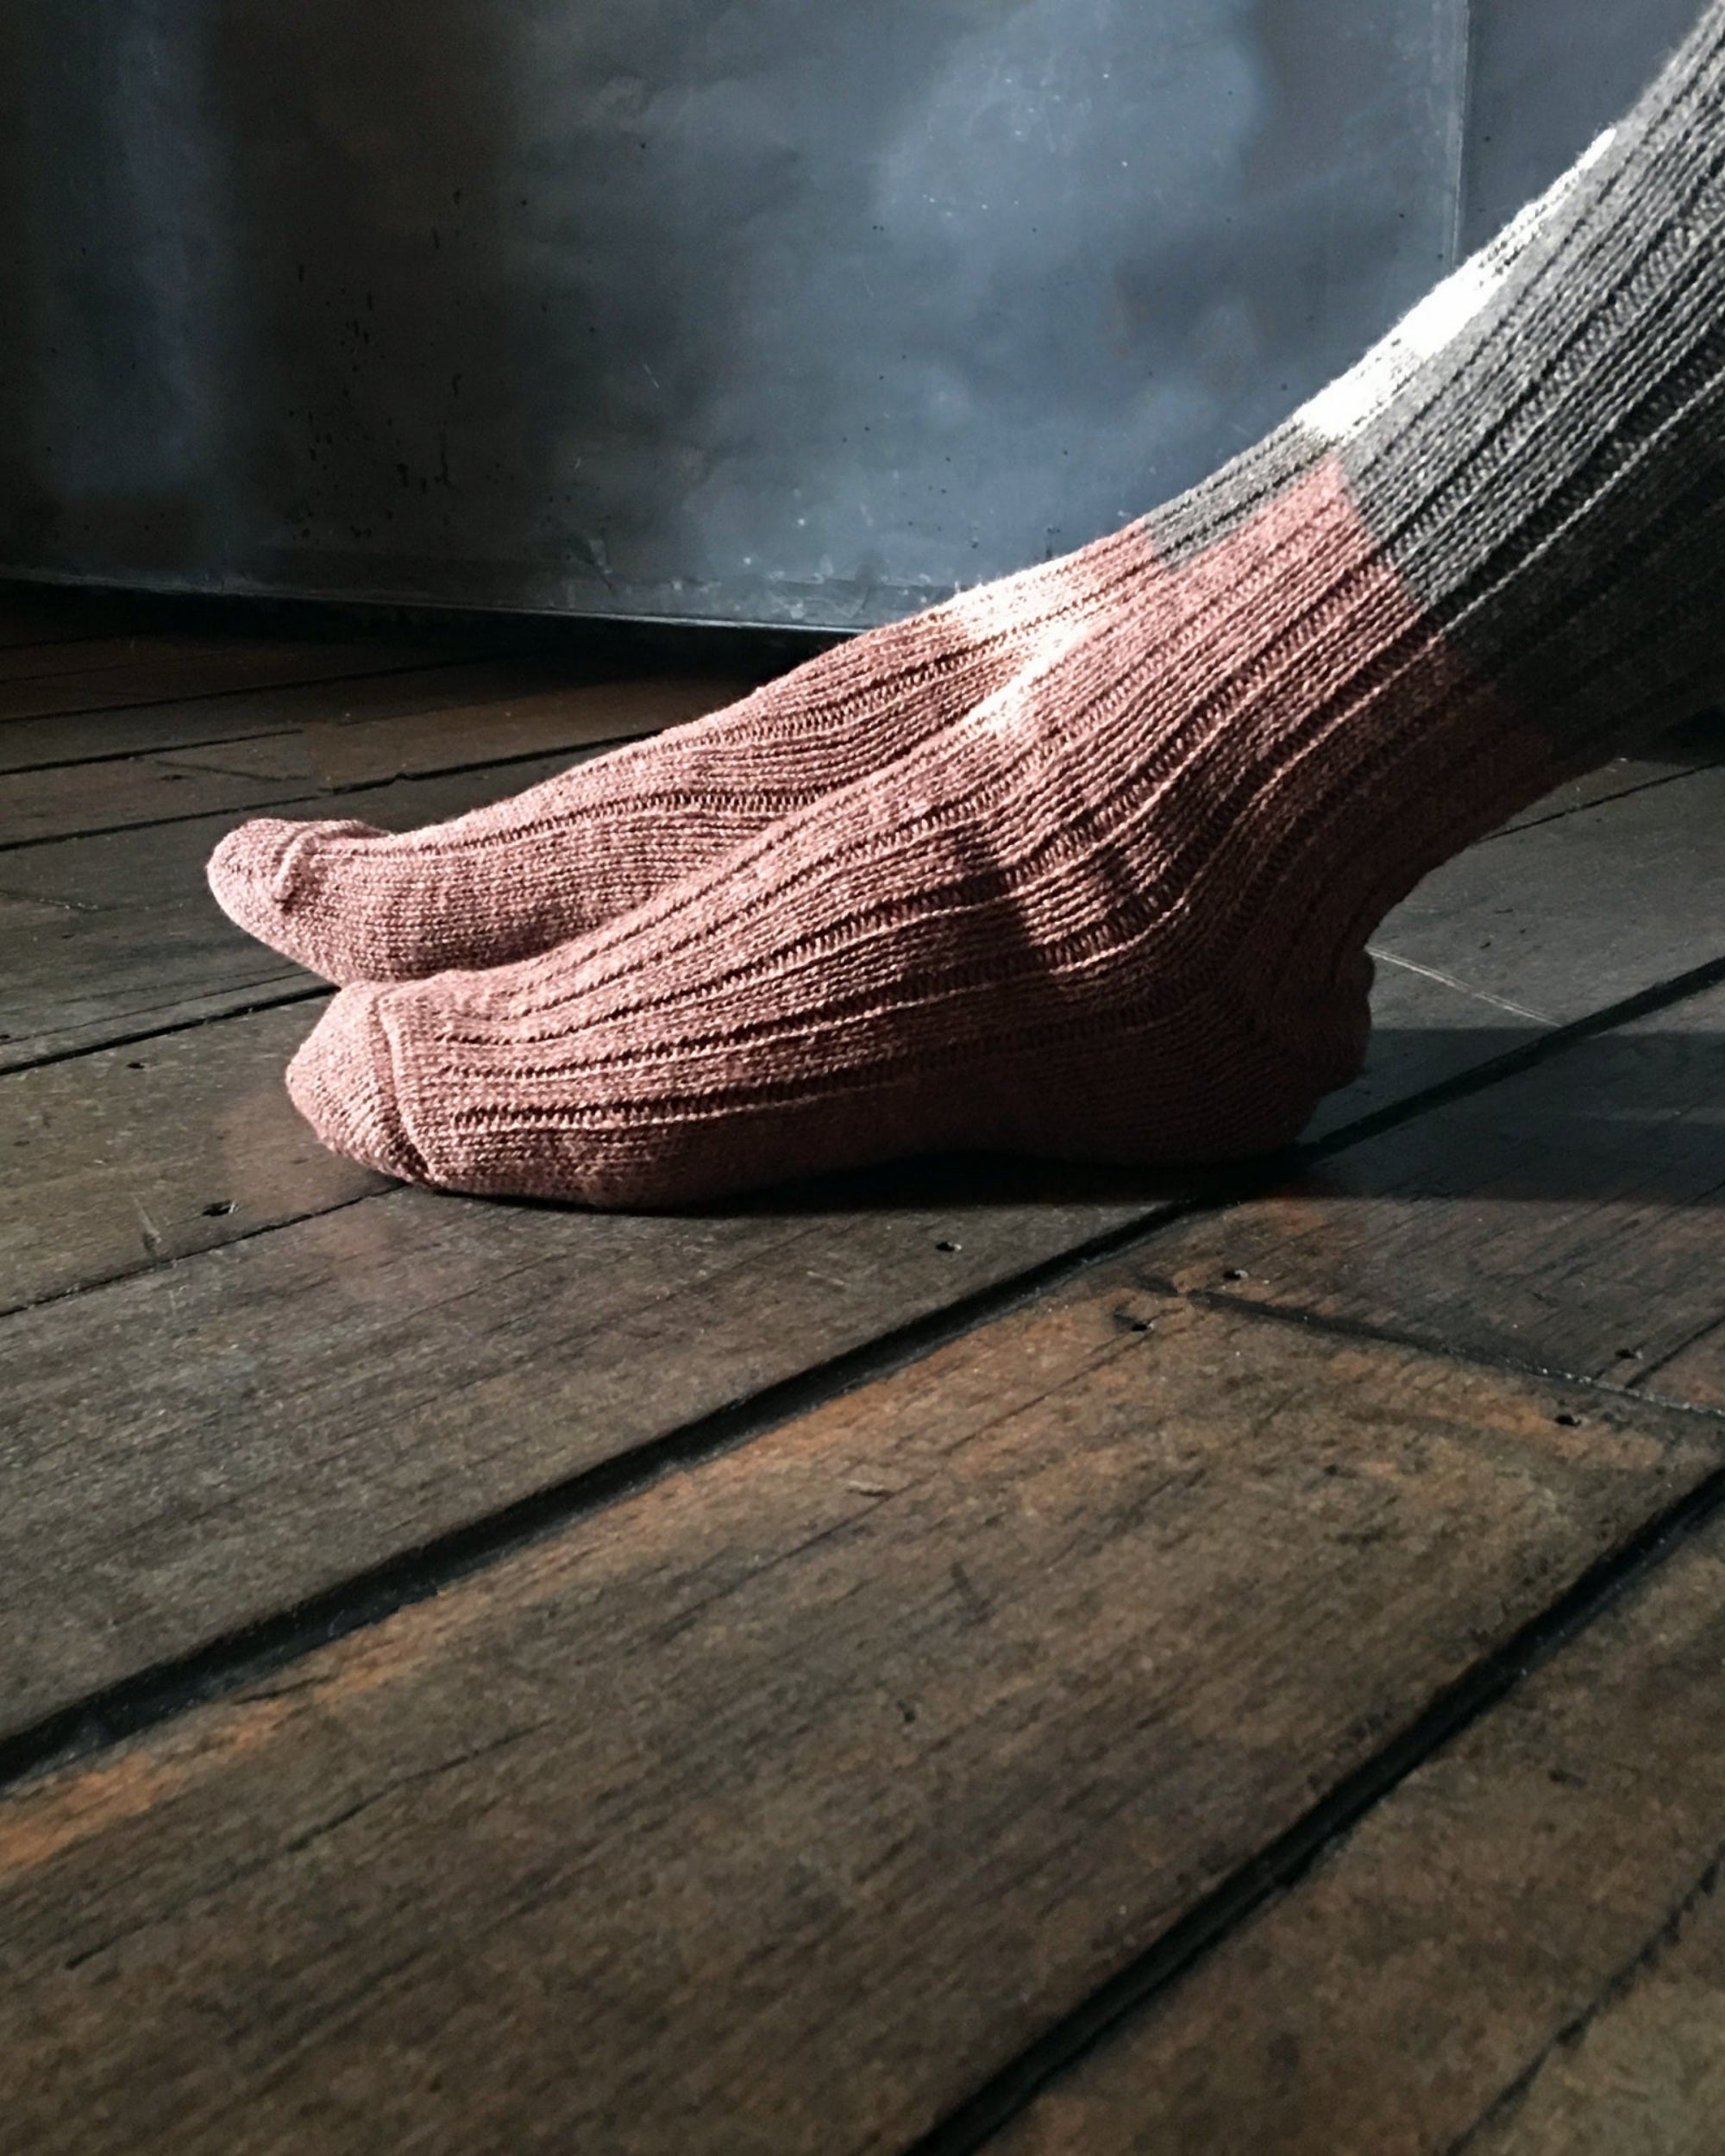 nishiguchi kutsushita : boston wool cotton slab socks